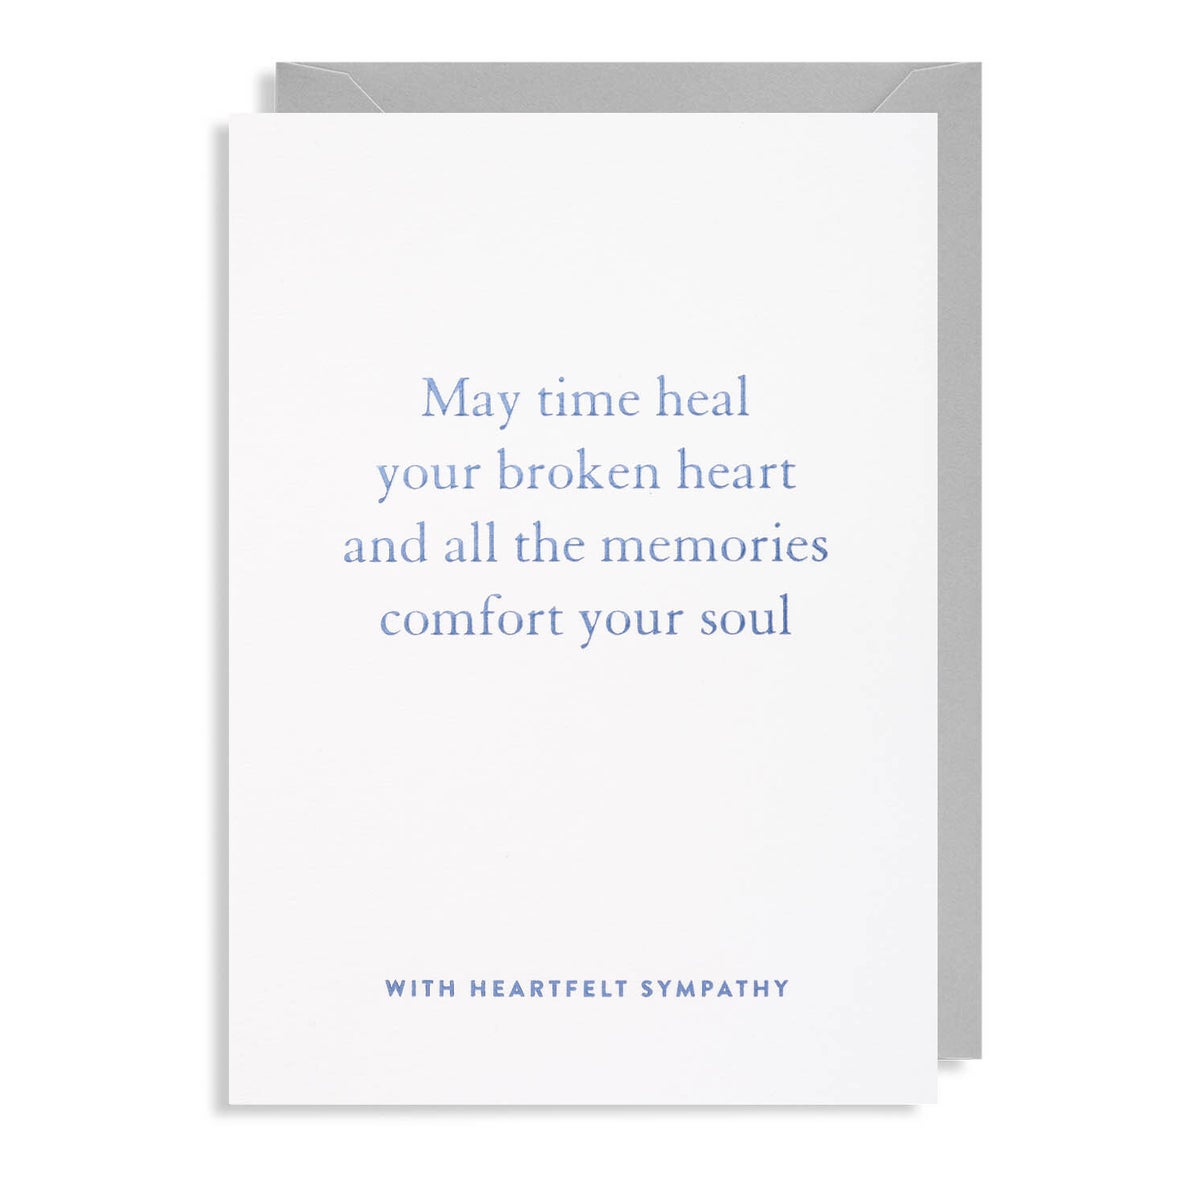 With Heartfelt Sympathy Greeting Card